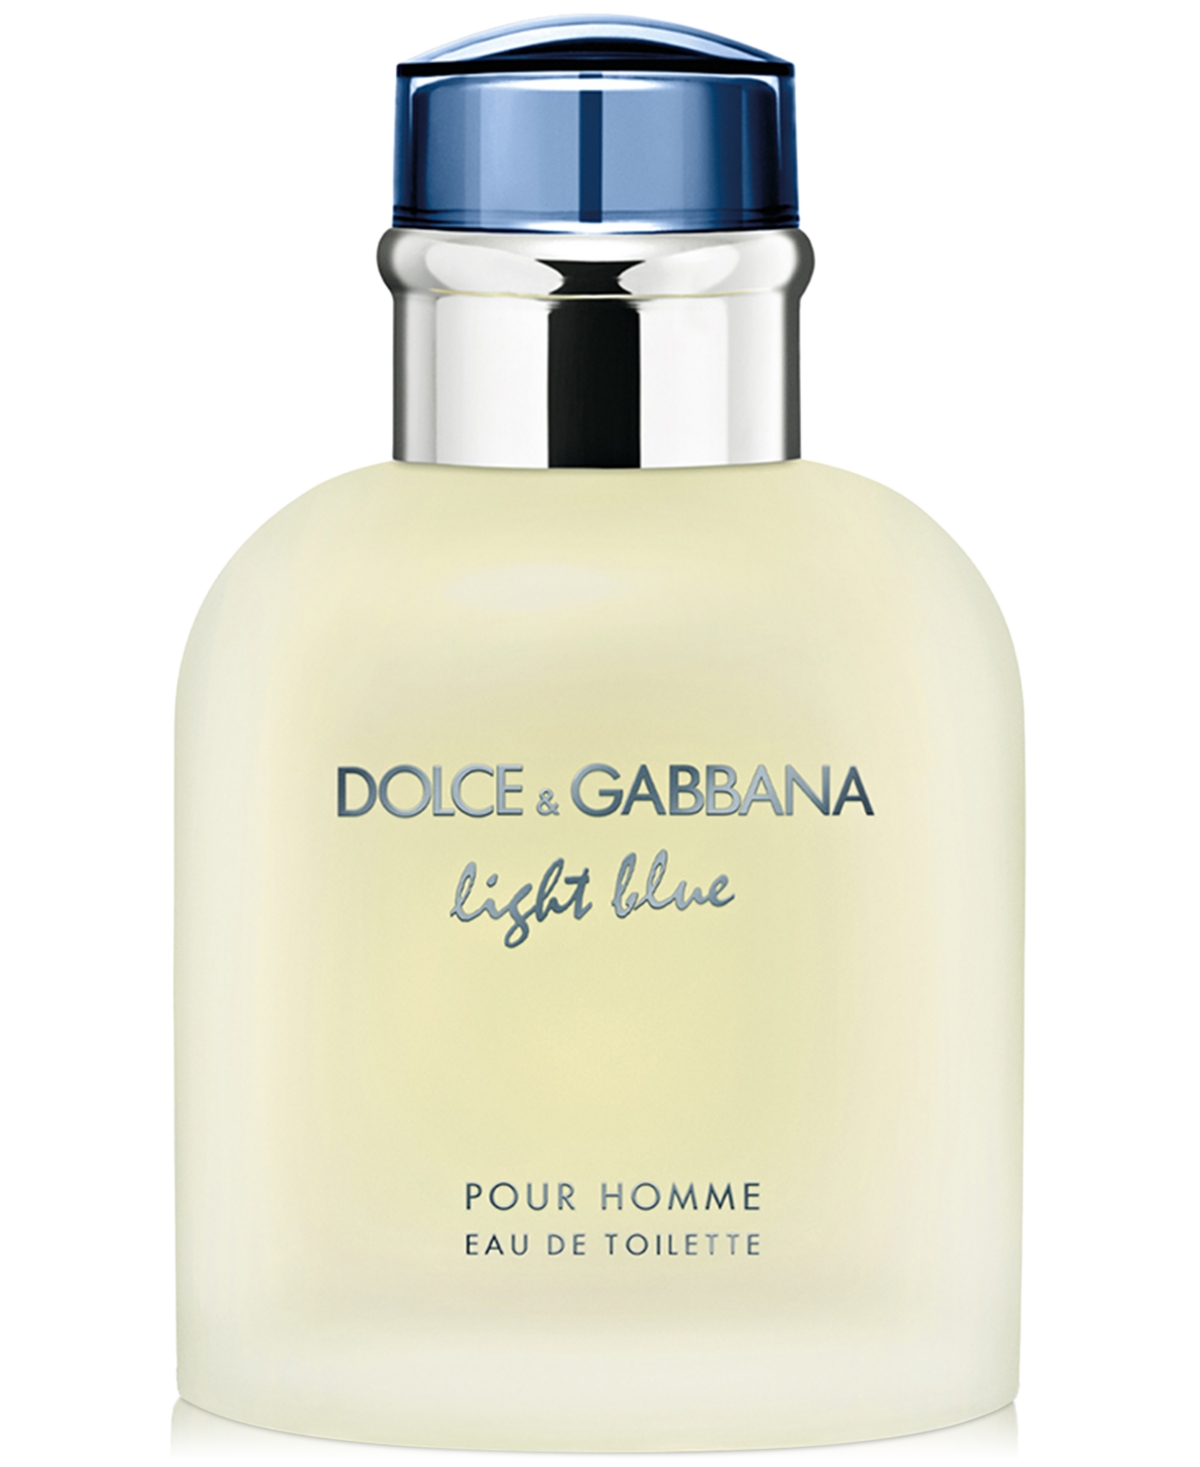 Dolce&Gabbana Men's Light Blue Pour Homme Eau de Toilette Spray, 2.5 oz.